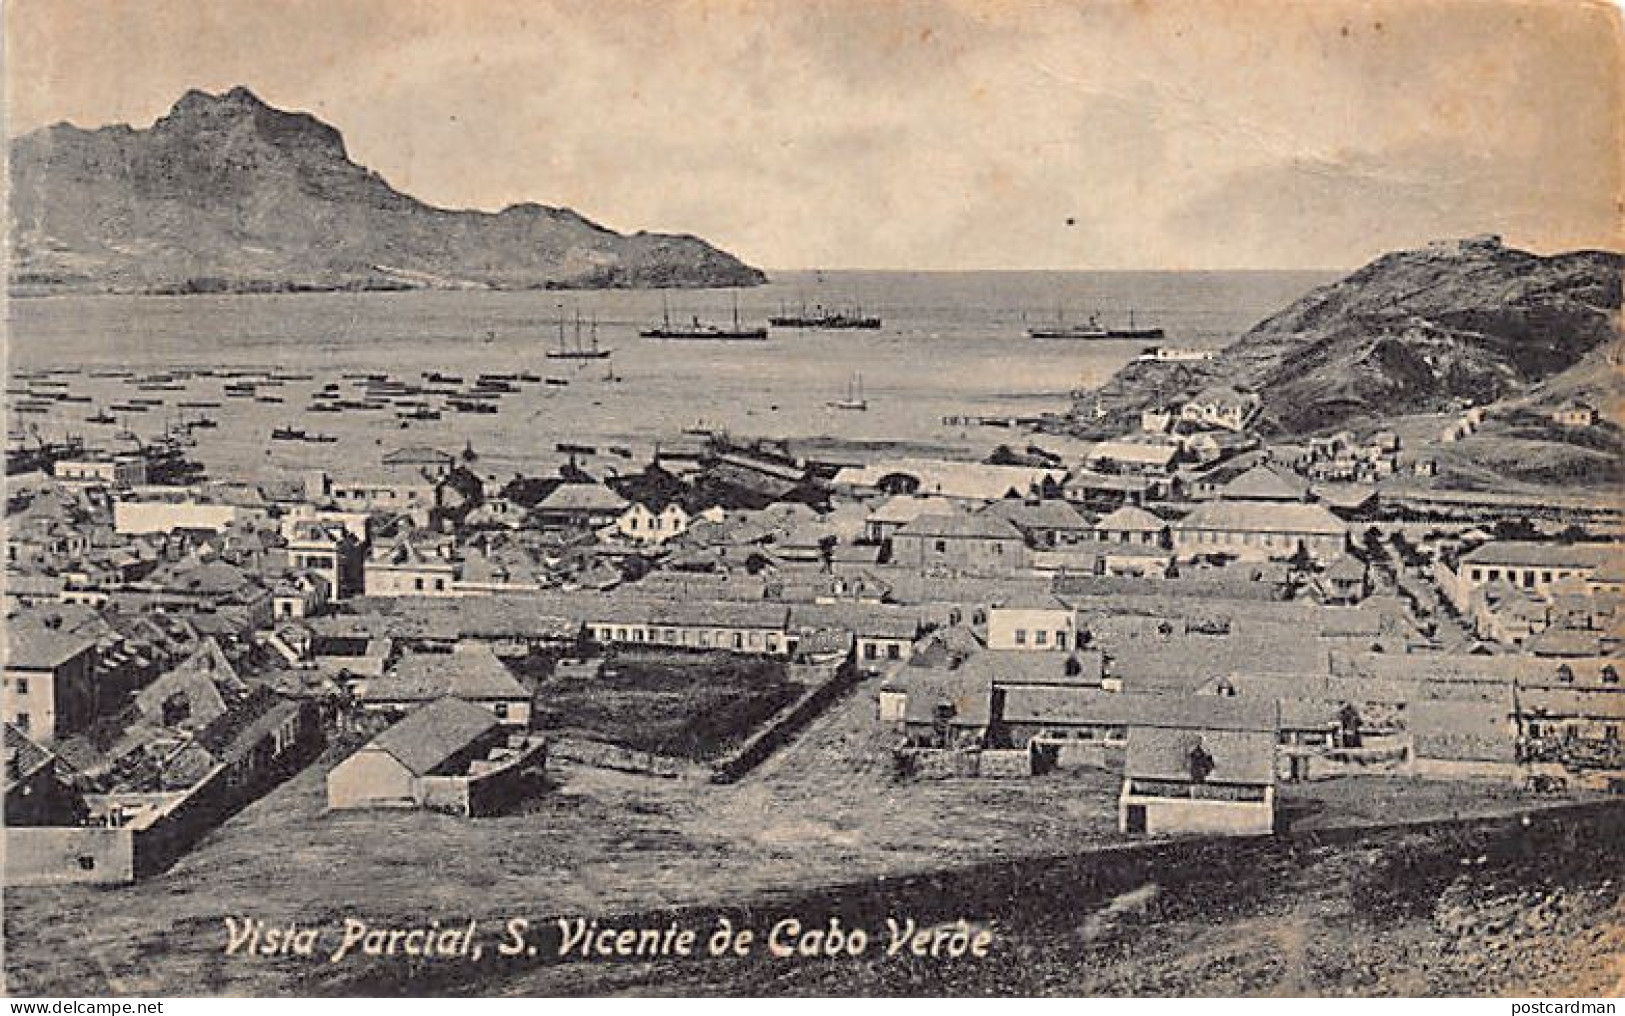 Cabo Verde - São Vicente - Vista Parcial - Ed. Bazar Oriental De Augusto Figueira - Cabo Verde